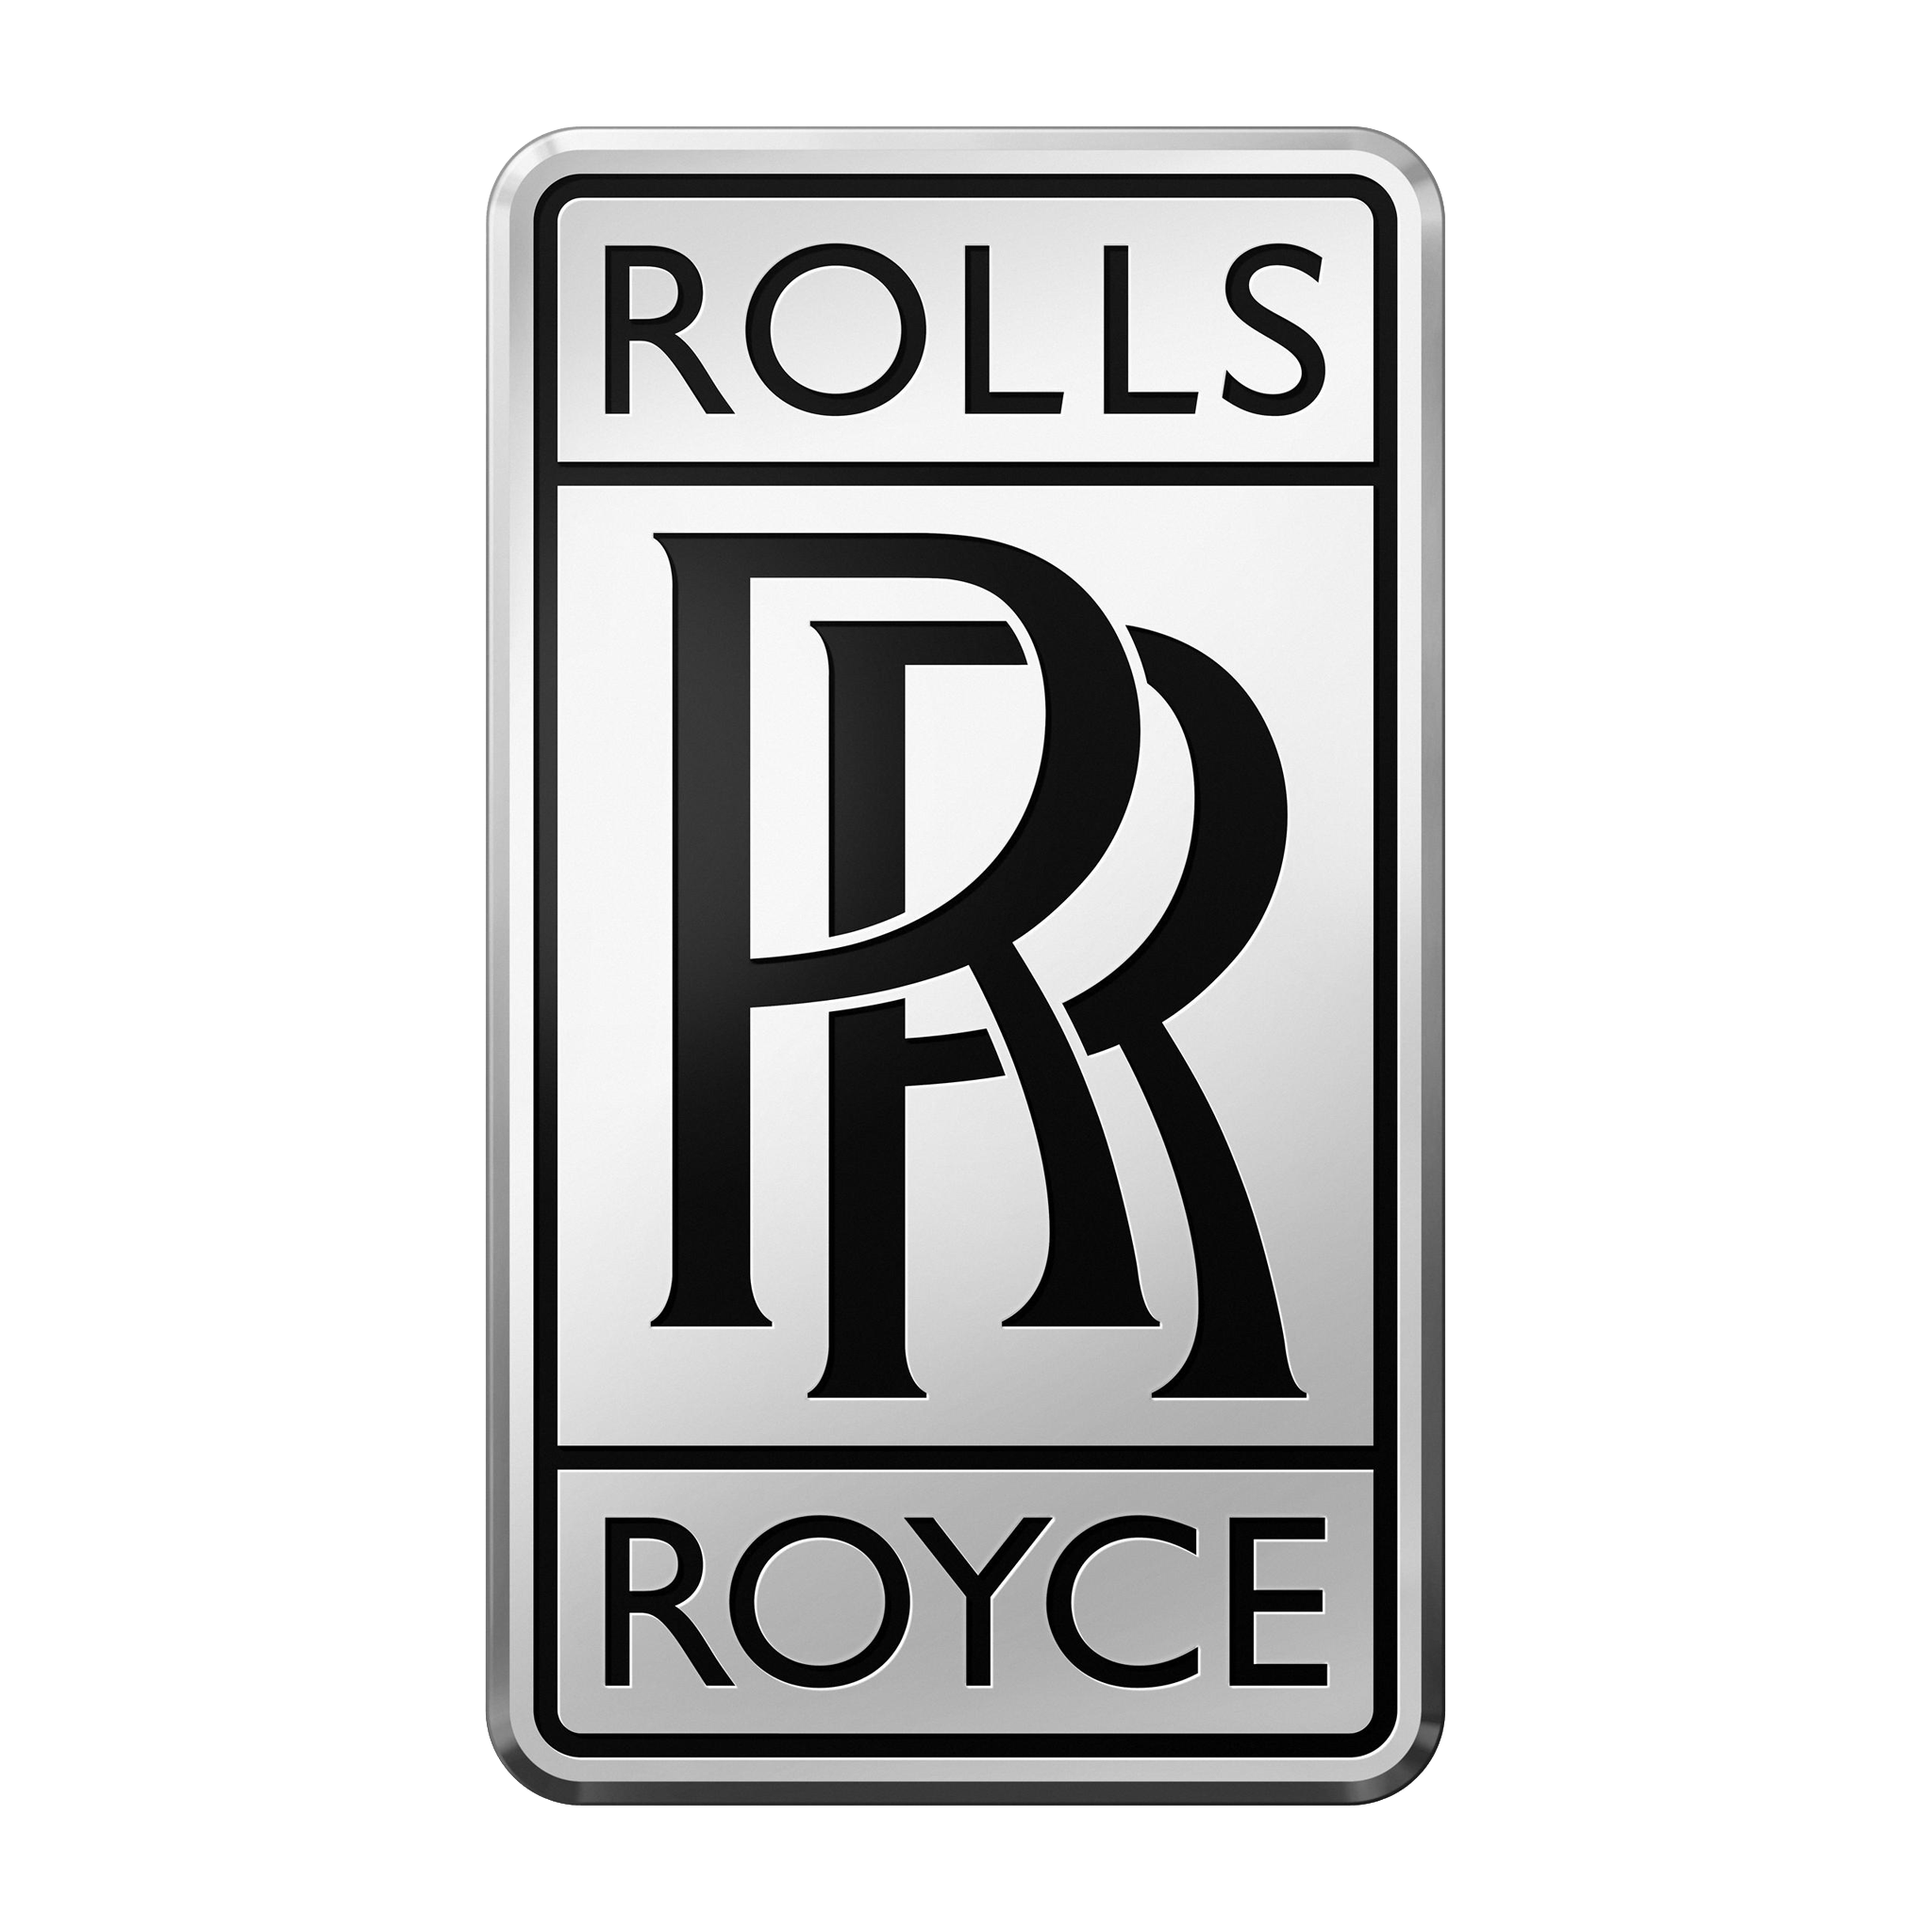 1043 Rolls Royce Logo Images Stock Photos  Vectors  Shutterstock